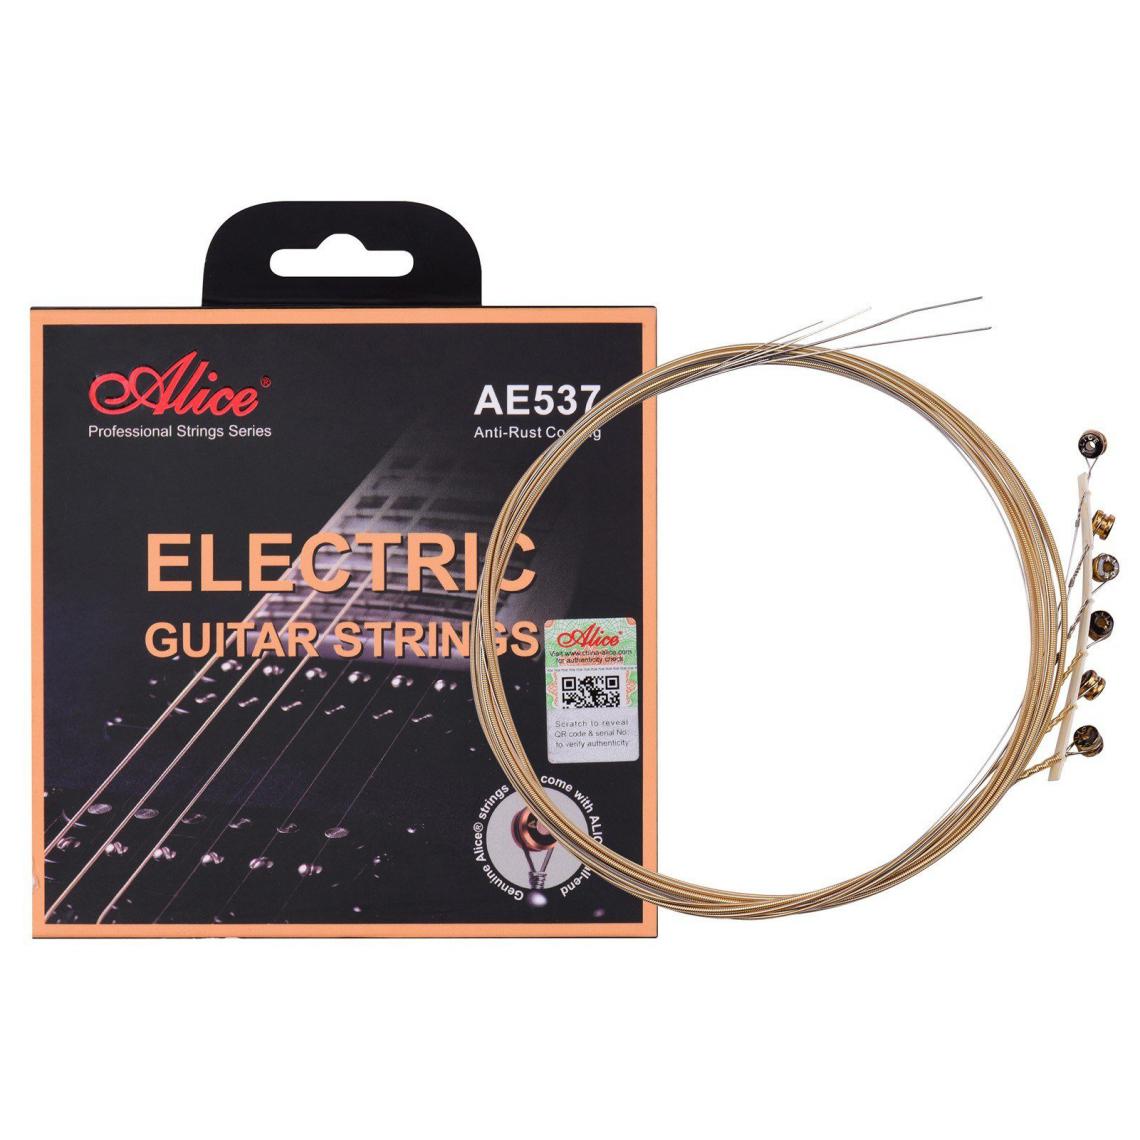 Justgreenbox - Cordes de guitare électrique à noyau hexagonal ensemble de cordes d'enroulement en alliage de fer bronze pour guitares 22-24 frettes, L - Cordes